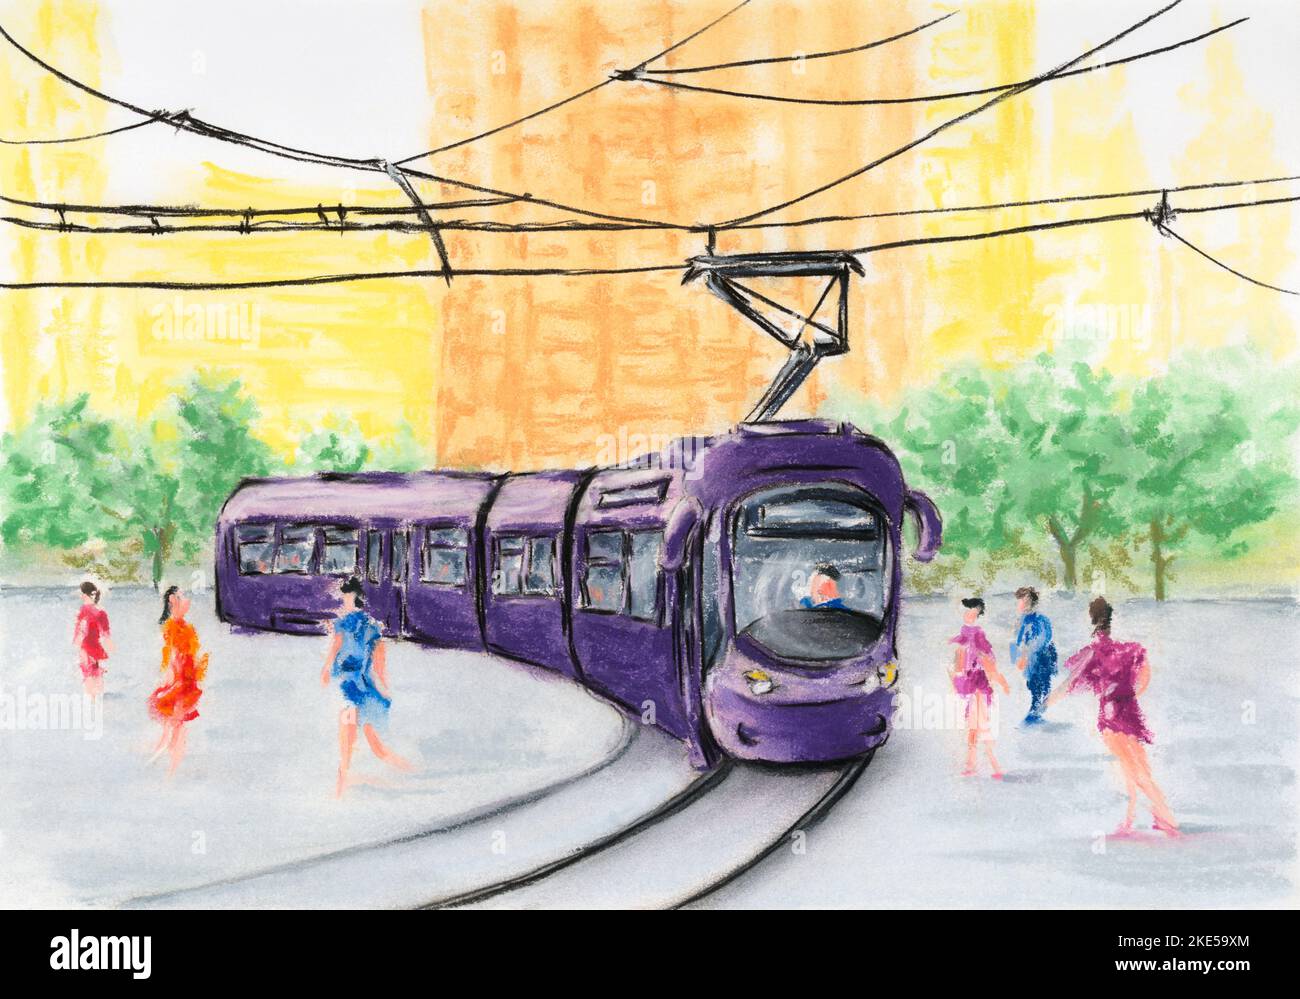 Strada cittadina con tram viola. Carbone e pastello morbido su carta. Foto Stock